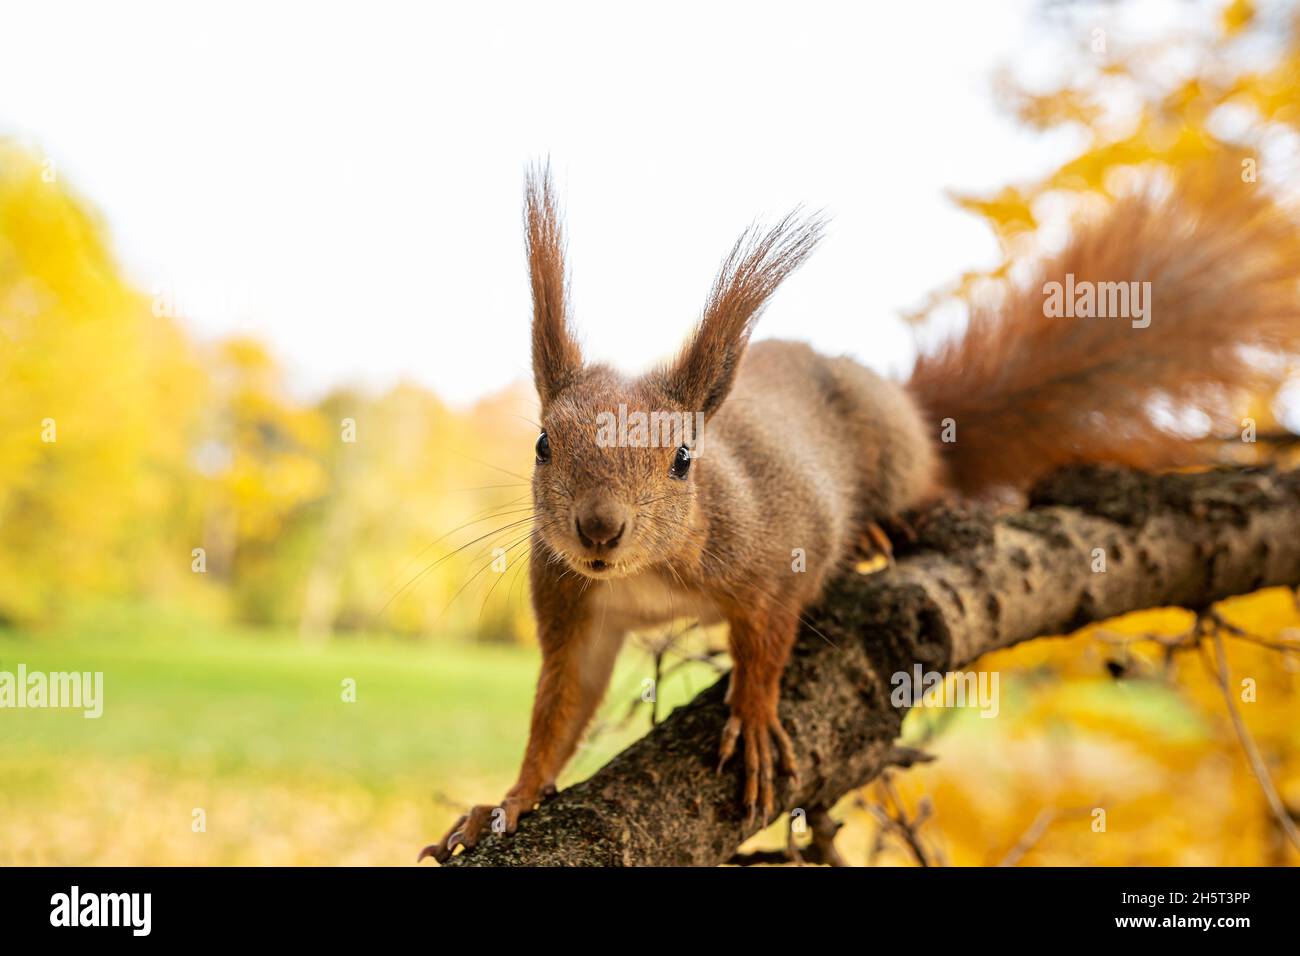 Rotes Eichhörnchen oder Sciurus vulgaris am Baumzweig aus der Nähe. Porträt von lustigen niedlichen Nagetier Blick auf die Kamera, selektive Fokus. Herbstpark Hintergrund. Stockfoto